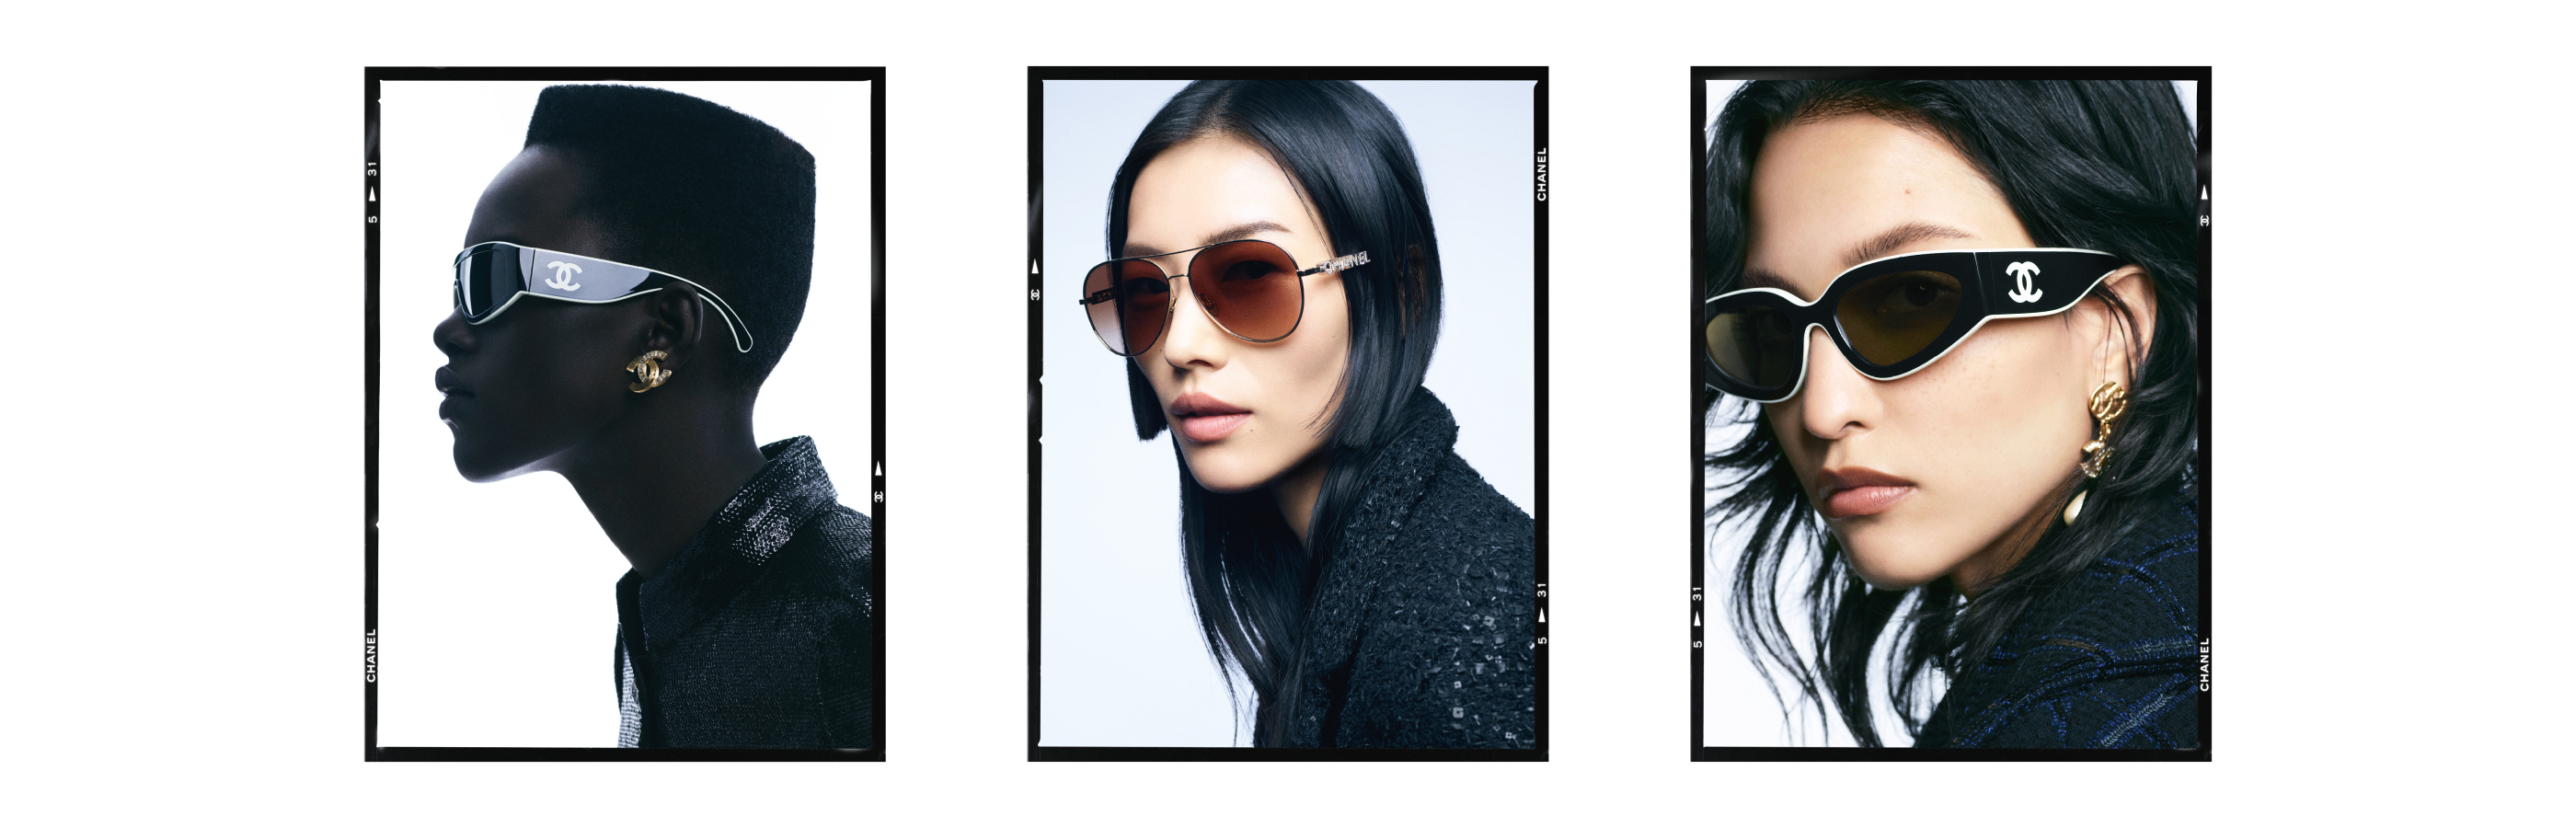 Chanel 5473Q C501/S8 Sunglasses - US